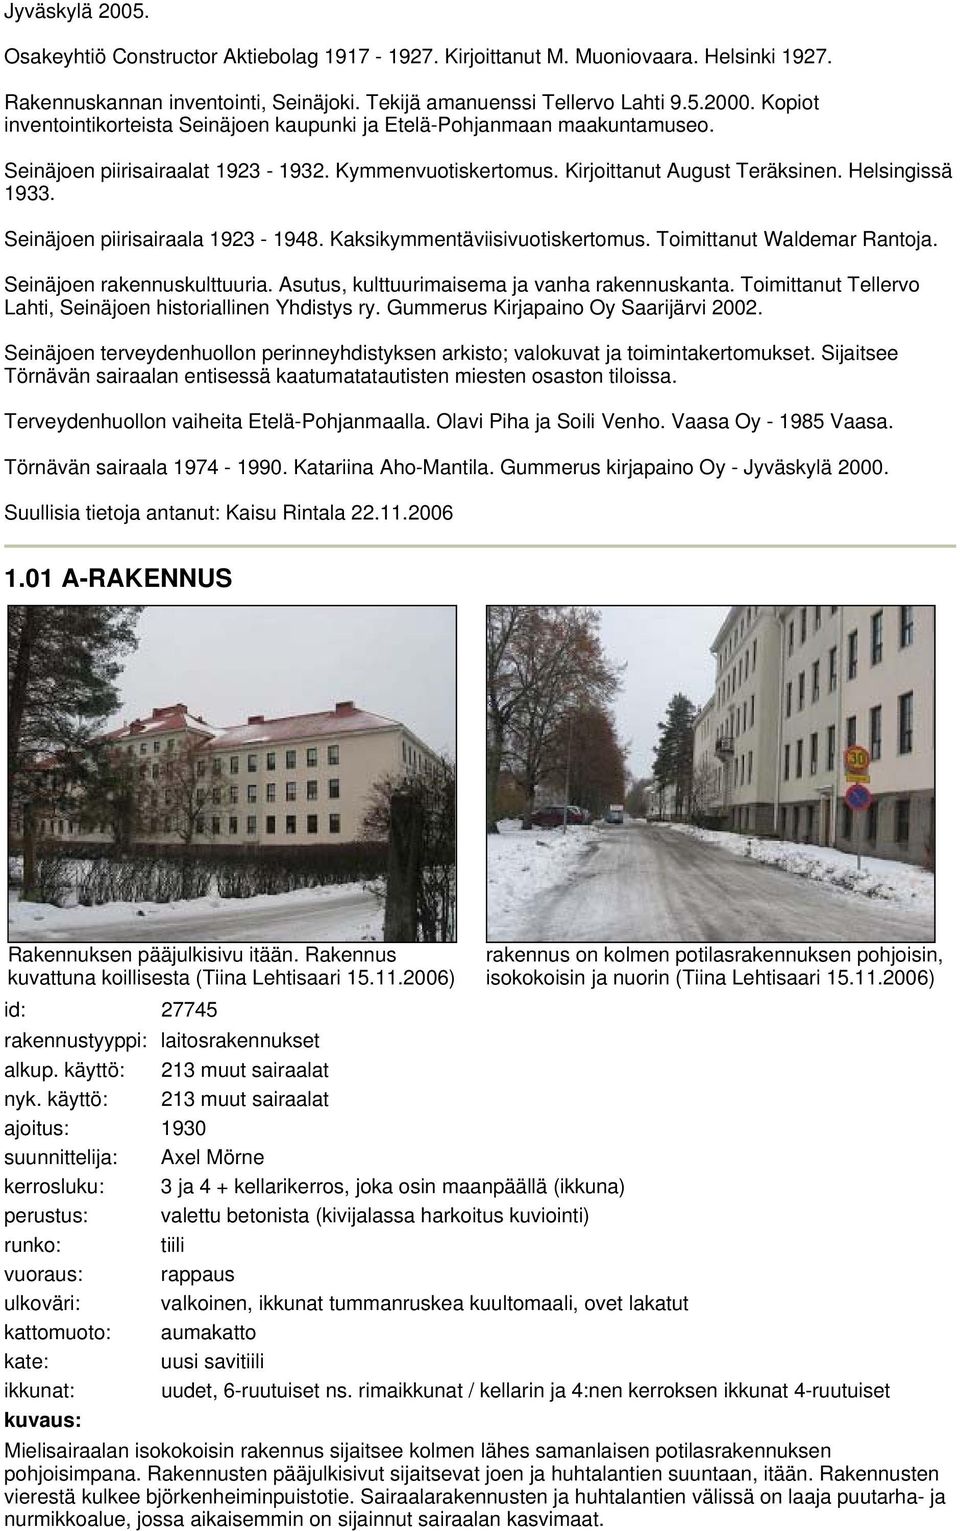 Seinäjoen piirisairaala -. Kaksikymmentäviisivuotiskertomus. Toimittanut Waldem Rantoja. Seinäjoen rakennuskulttuuria. Asutus, kulttuurimaisema ja vanha rakennuskanta.